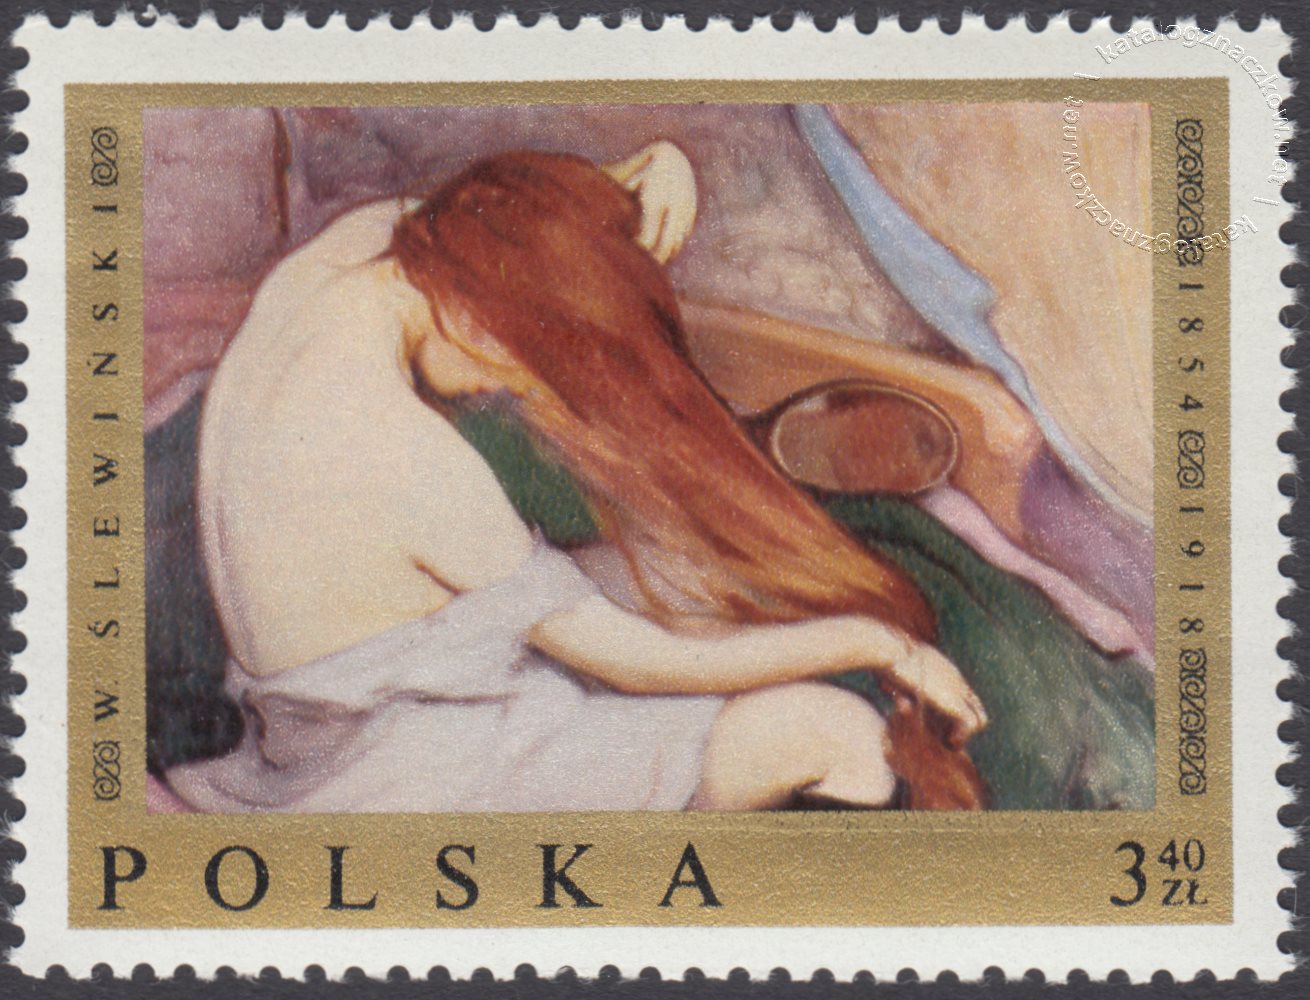 Malarstwo polskie znaczek nr 1799